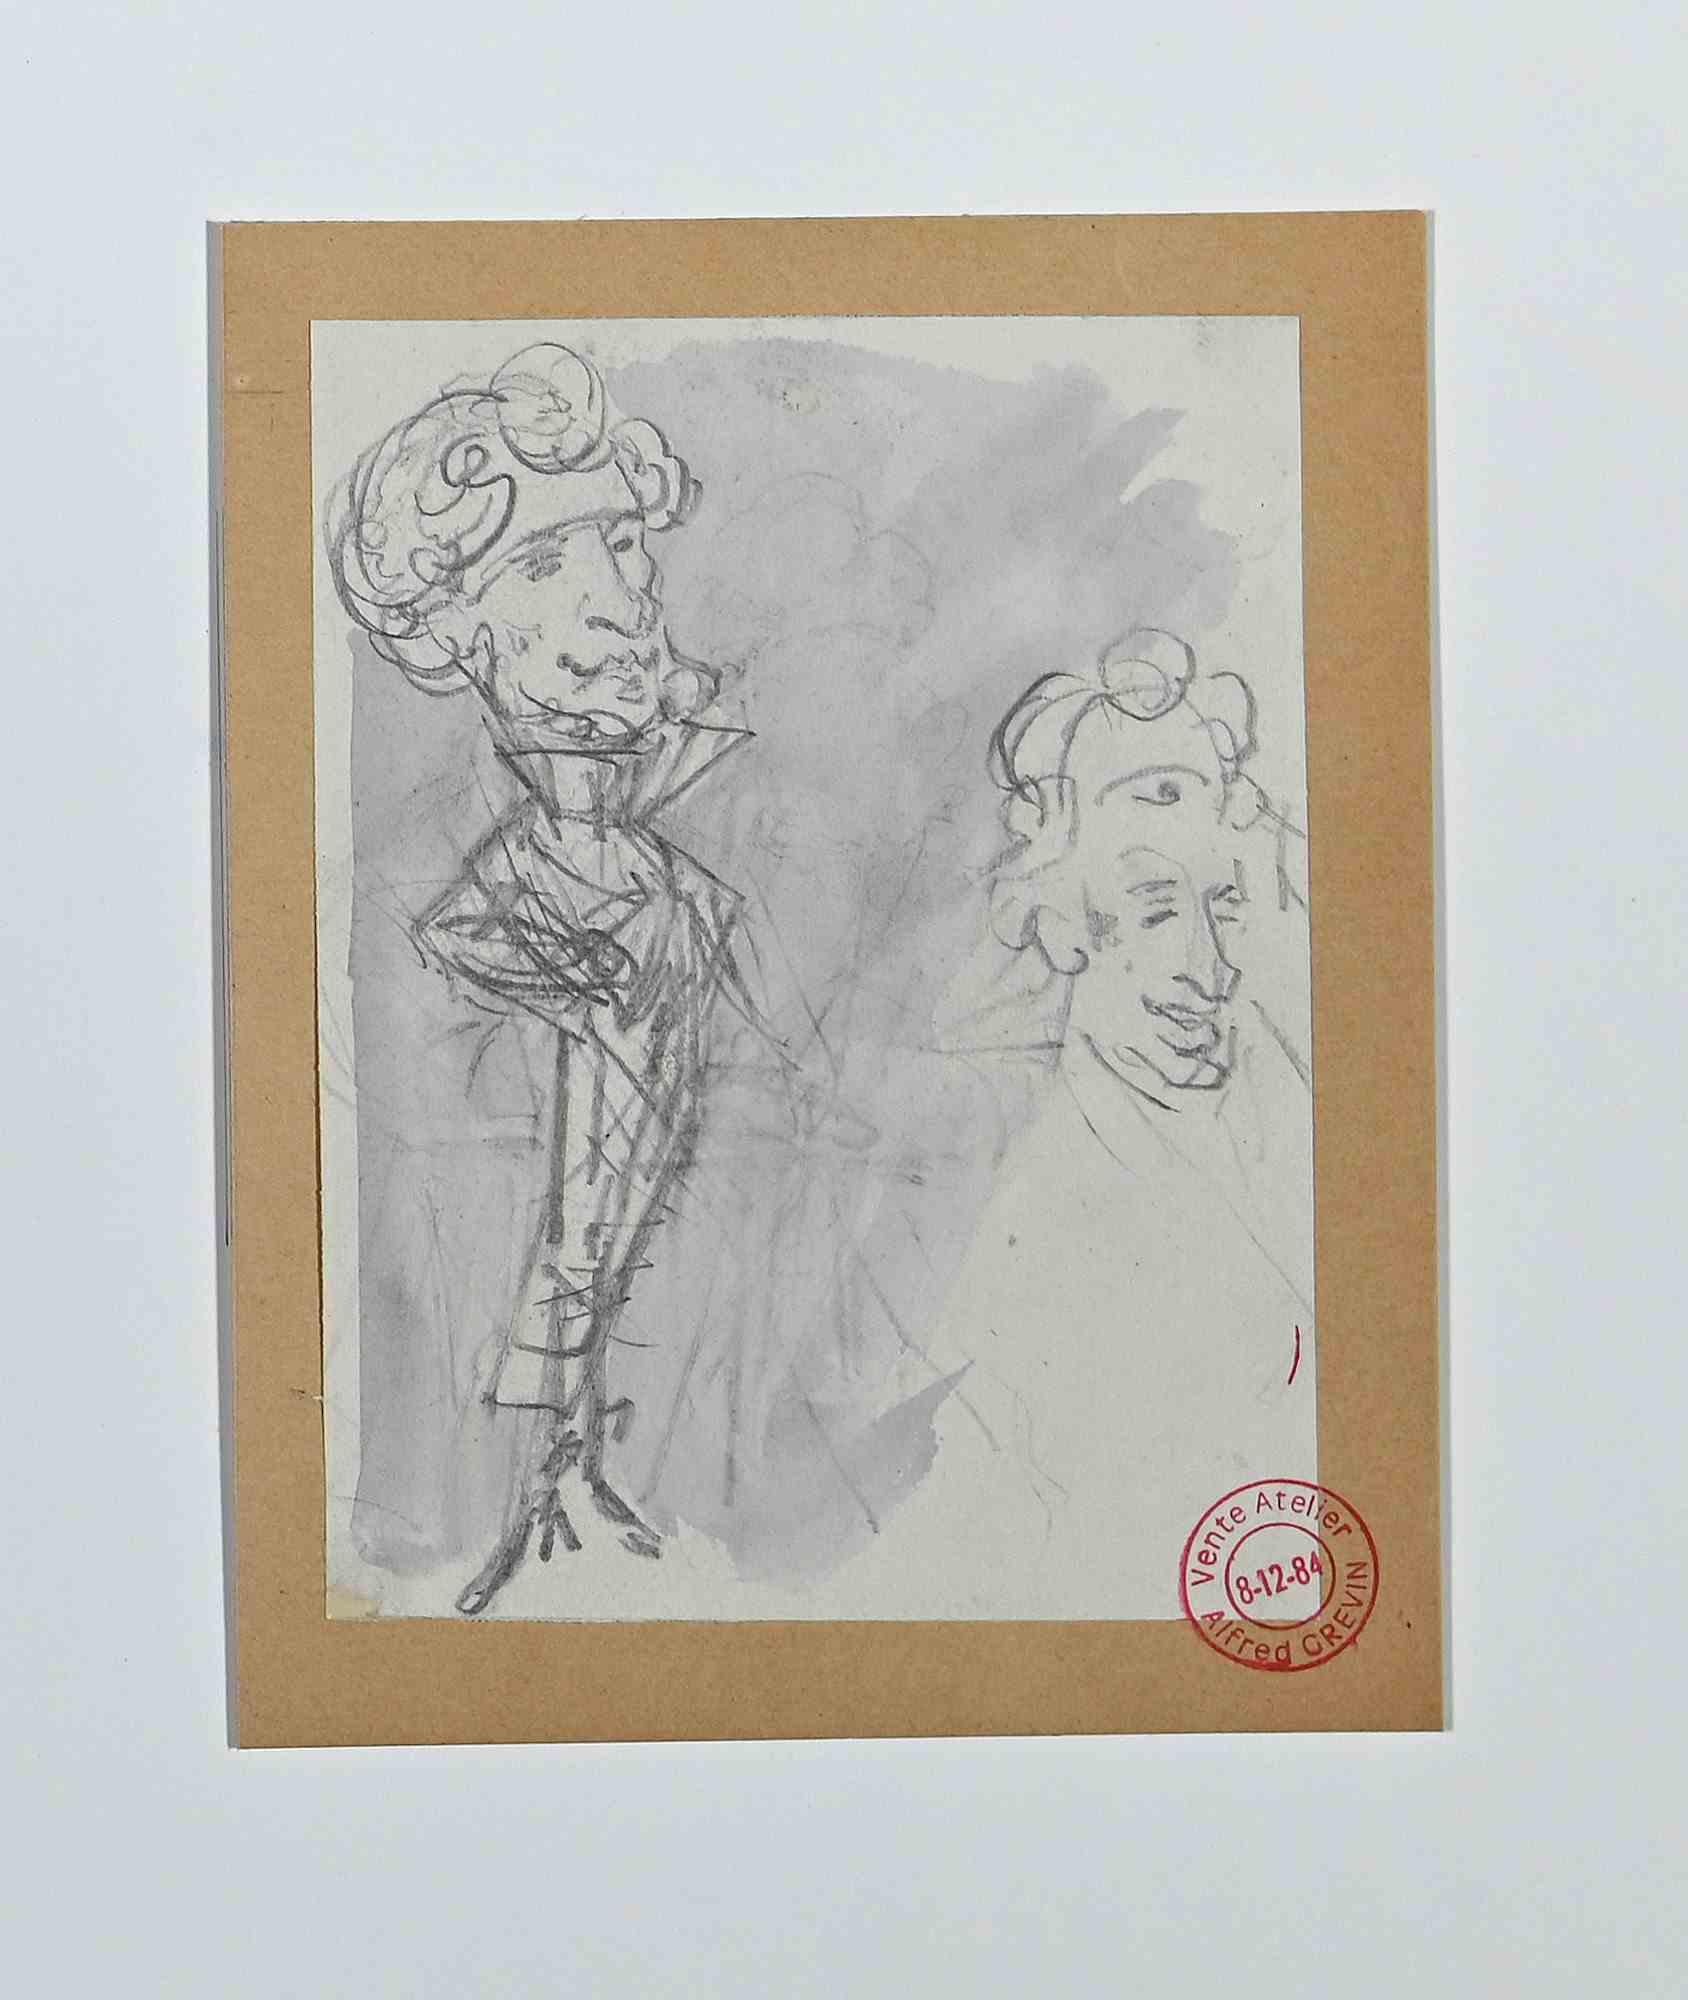 Portraits ist eine Originalzeichnung in Bleistift und Aquarell von Alfred Grévin aus dem späten 19. Jahrhundert.

Angewandt auf ein Passepartout: 36 x 26 cm.

Mit dem Stempel des Ateliers "Grevin" unten rechts.

Unter guten Bedingungen.

Alfred